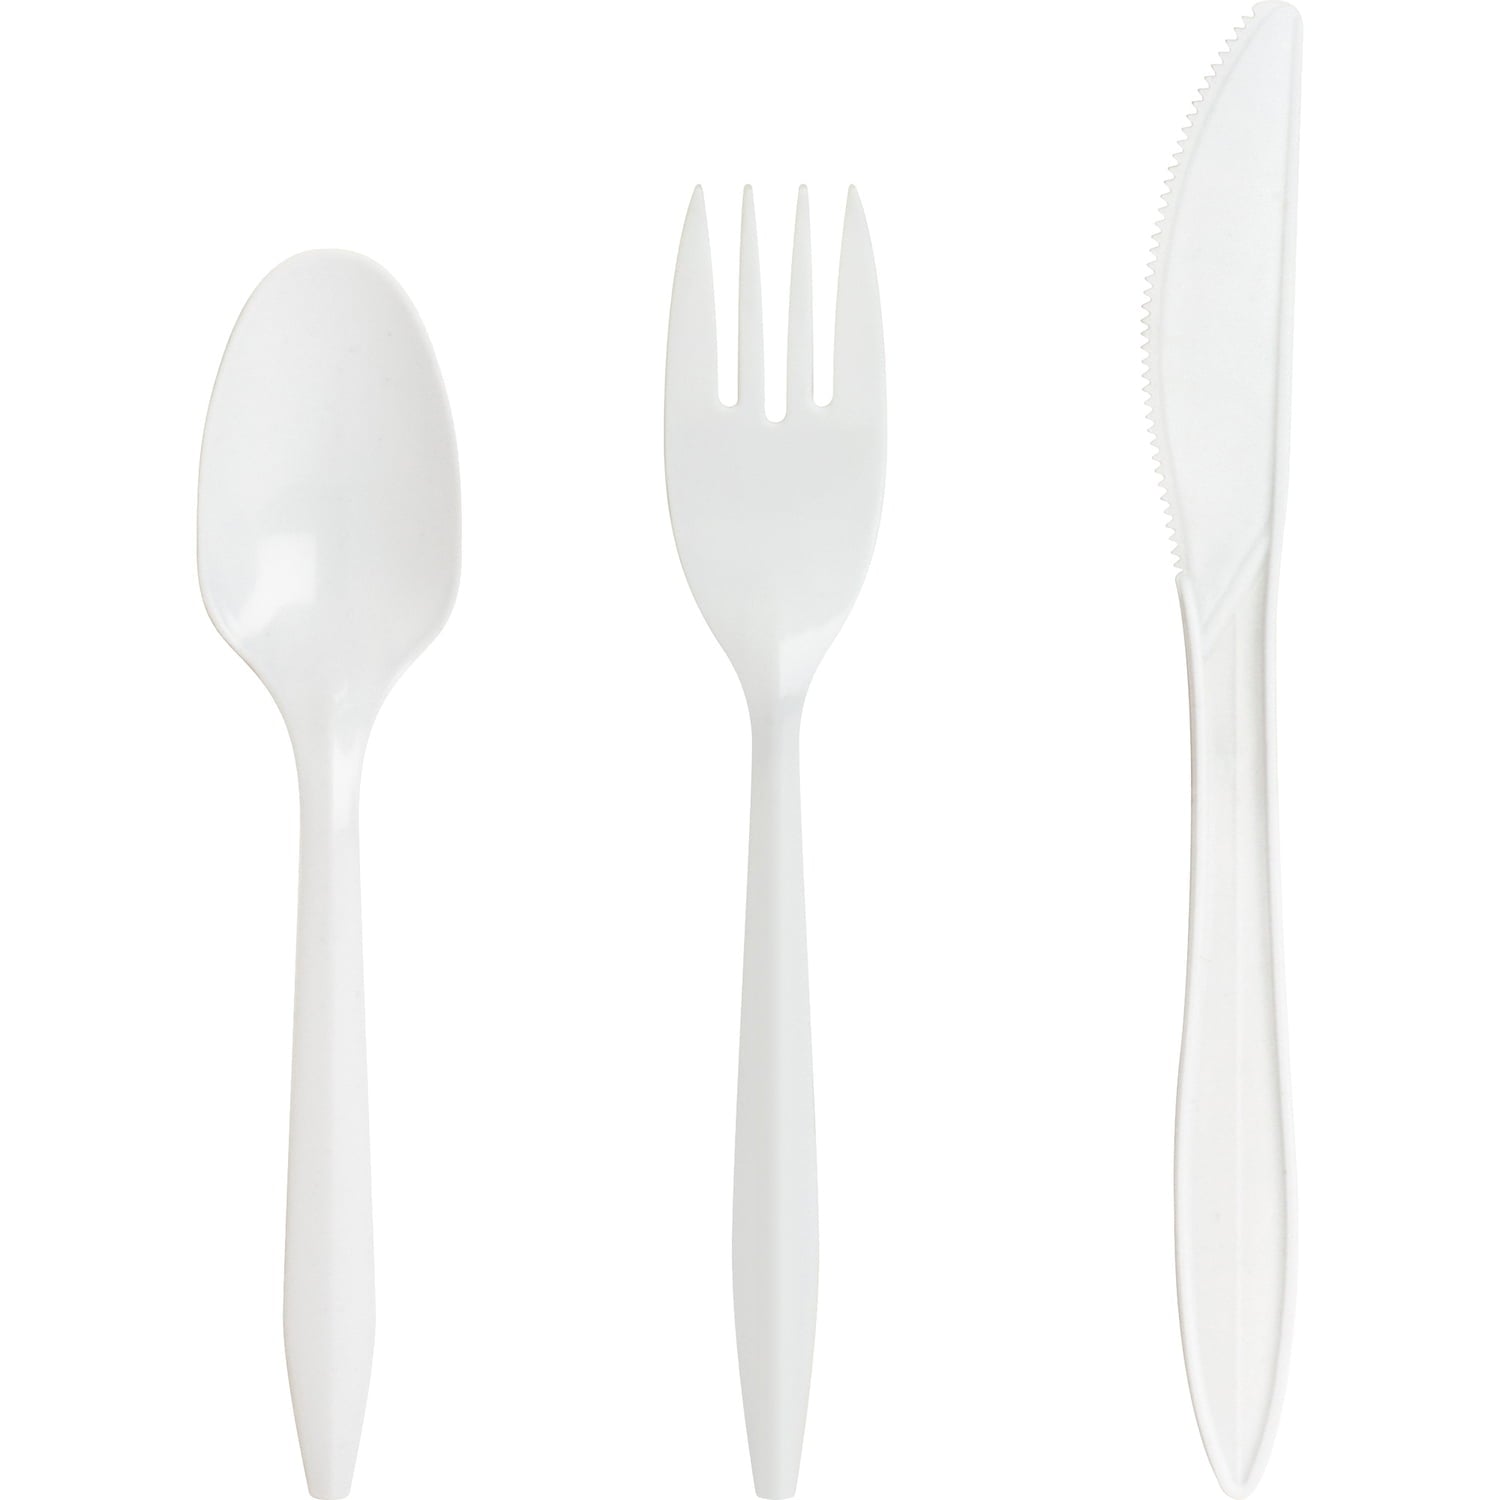 Genuine Joe Medium-Weight Cutlery Plastic Spoons, 1000 Pack - Disposable